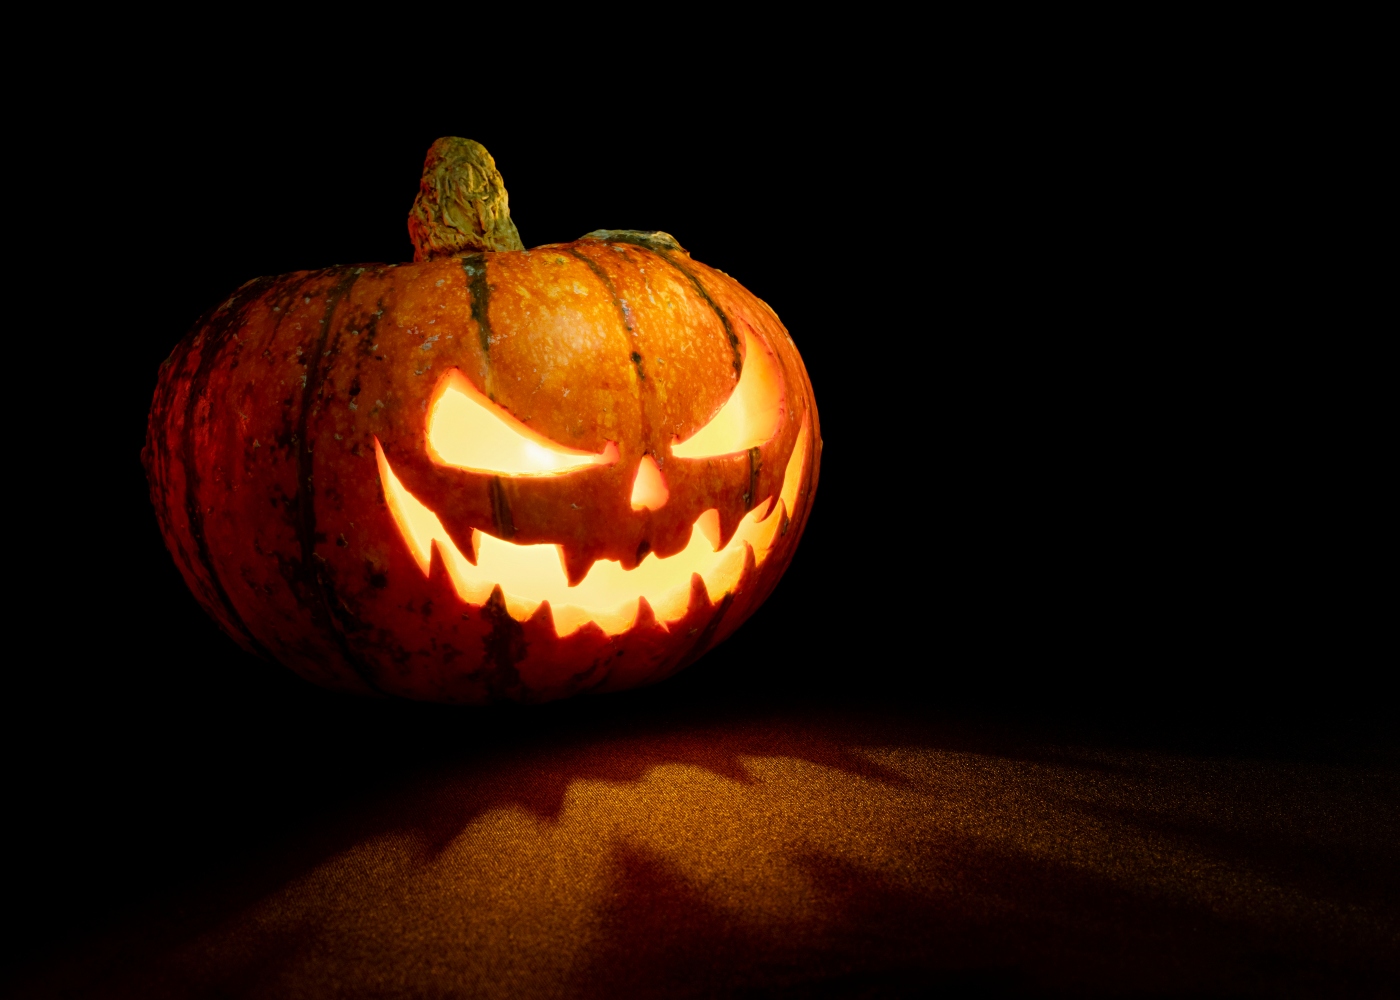 Cara assustadora de abóbora decoração de halloween